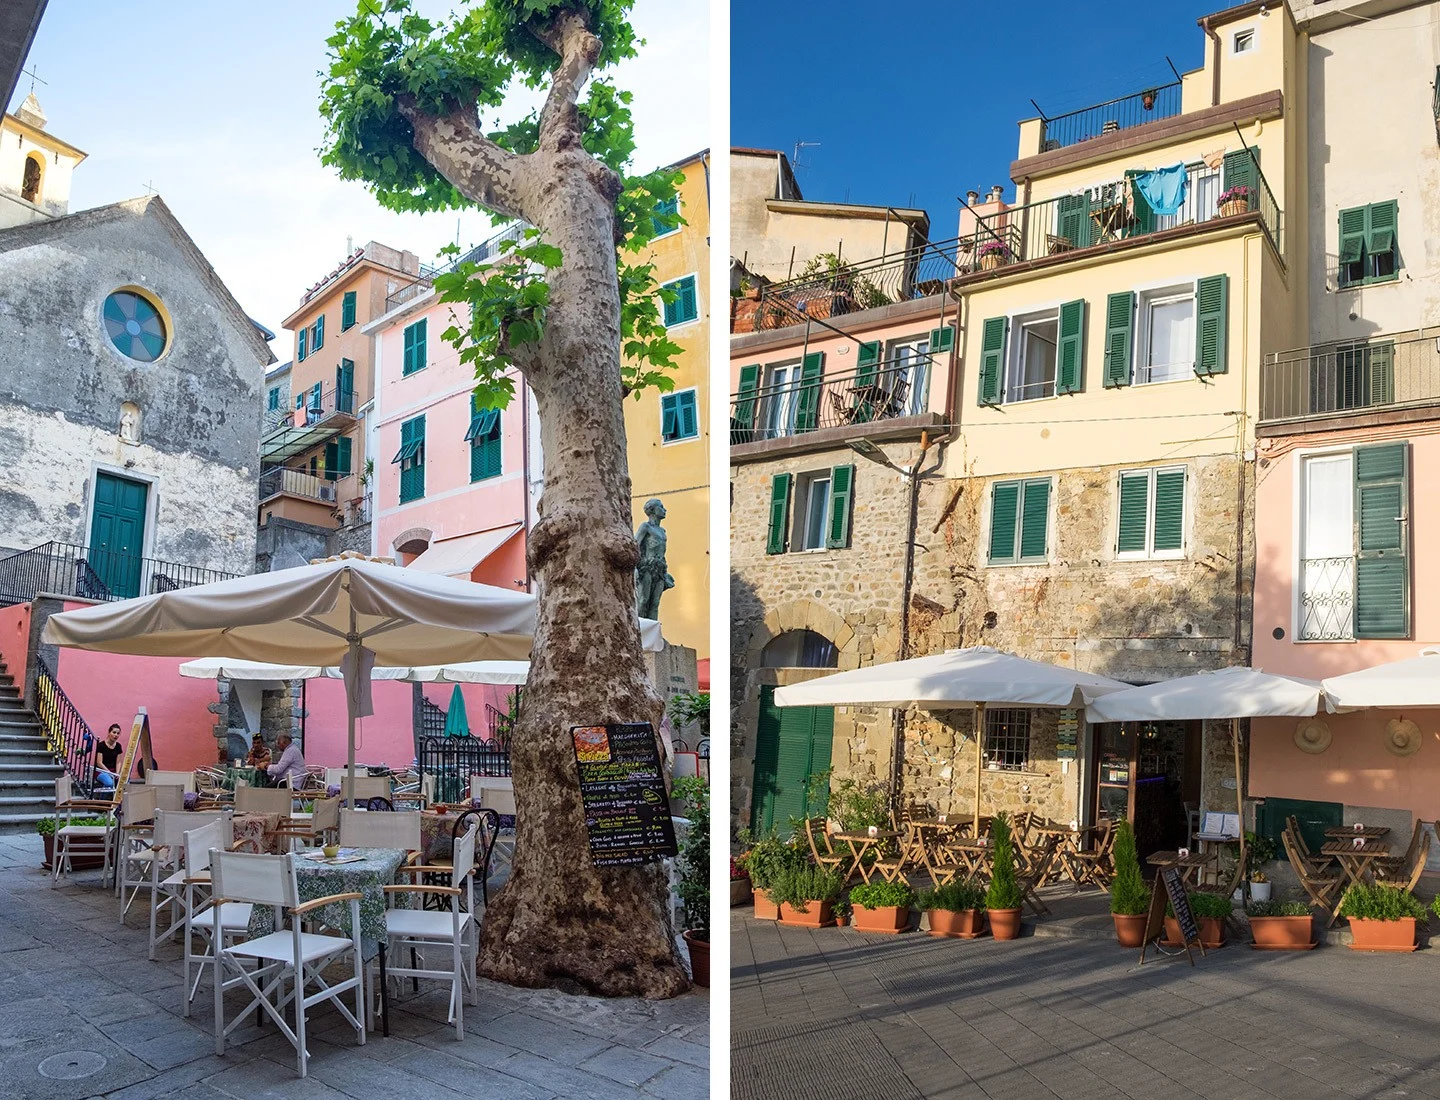 Quiet backstreets in the Cinque Terre village of Corniglia